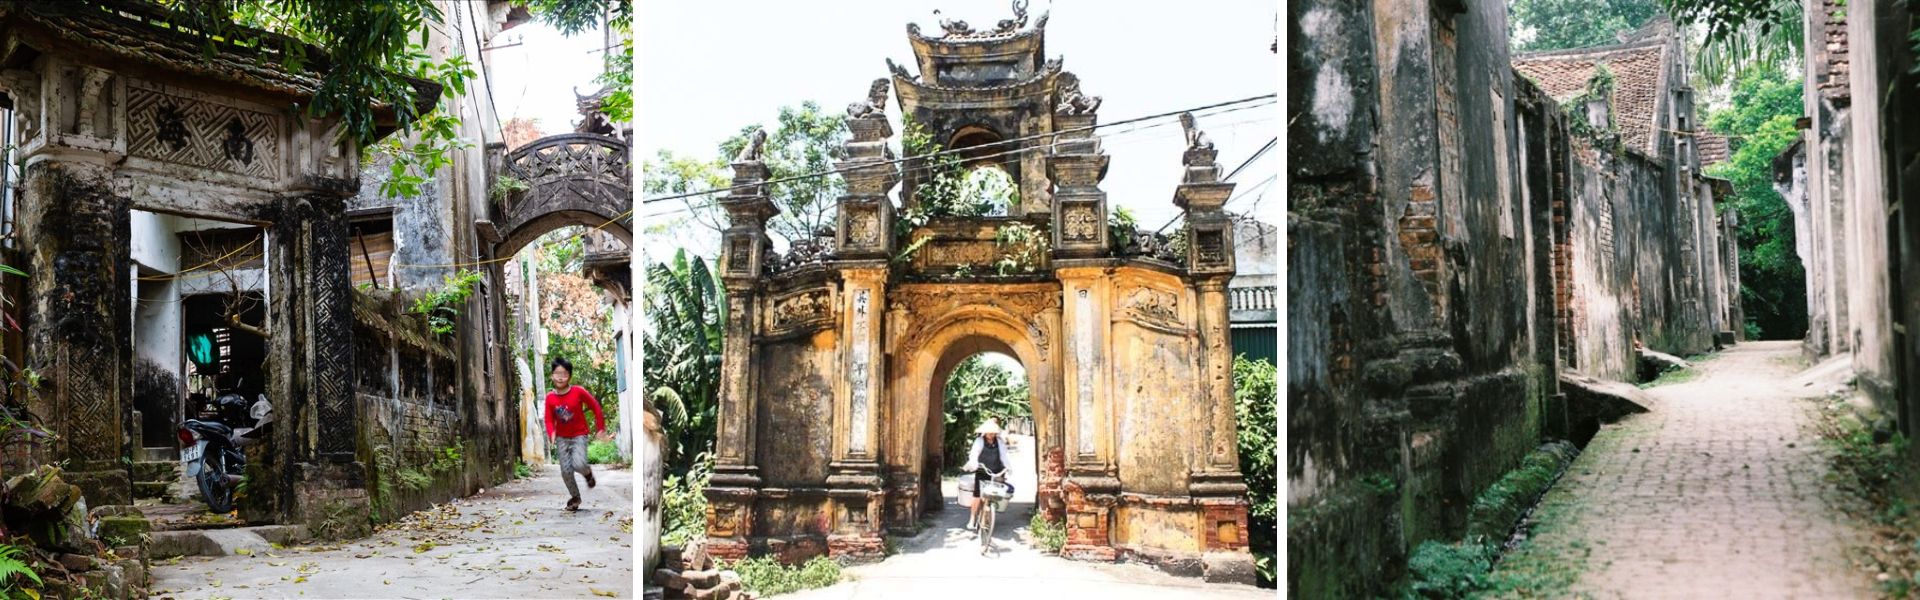 Visita al villaggio antico di Cuu ad Hanoi